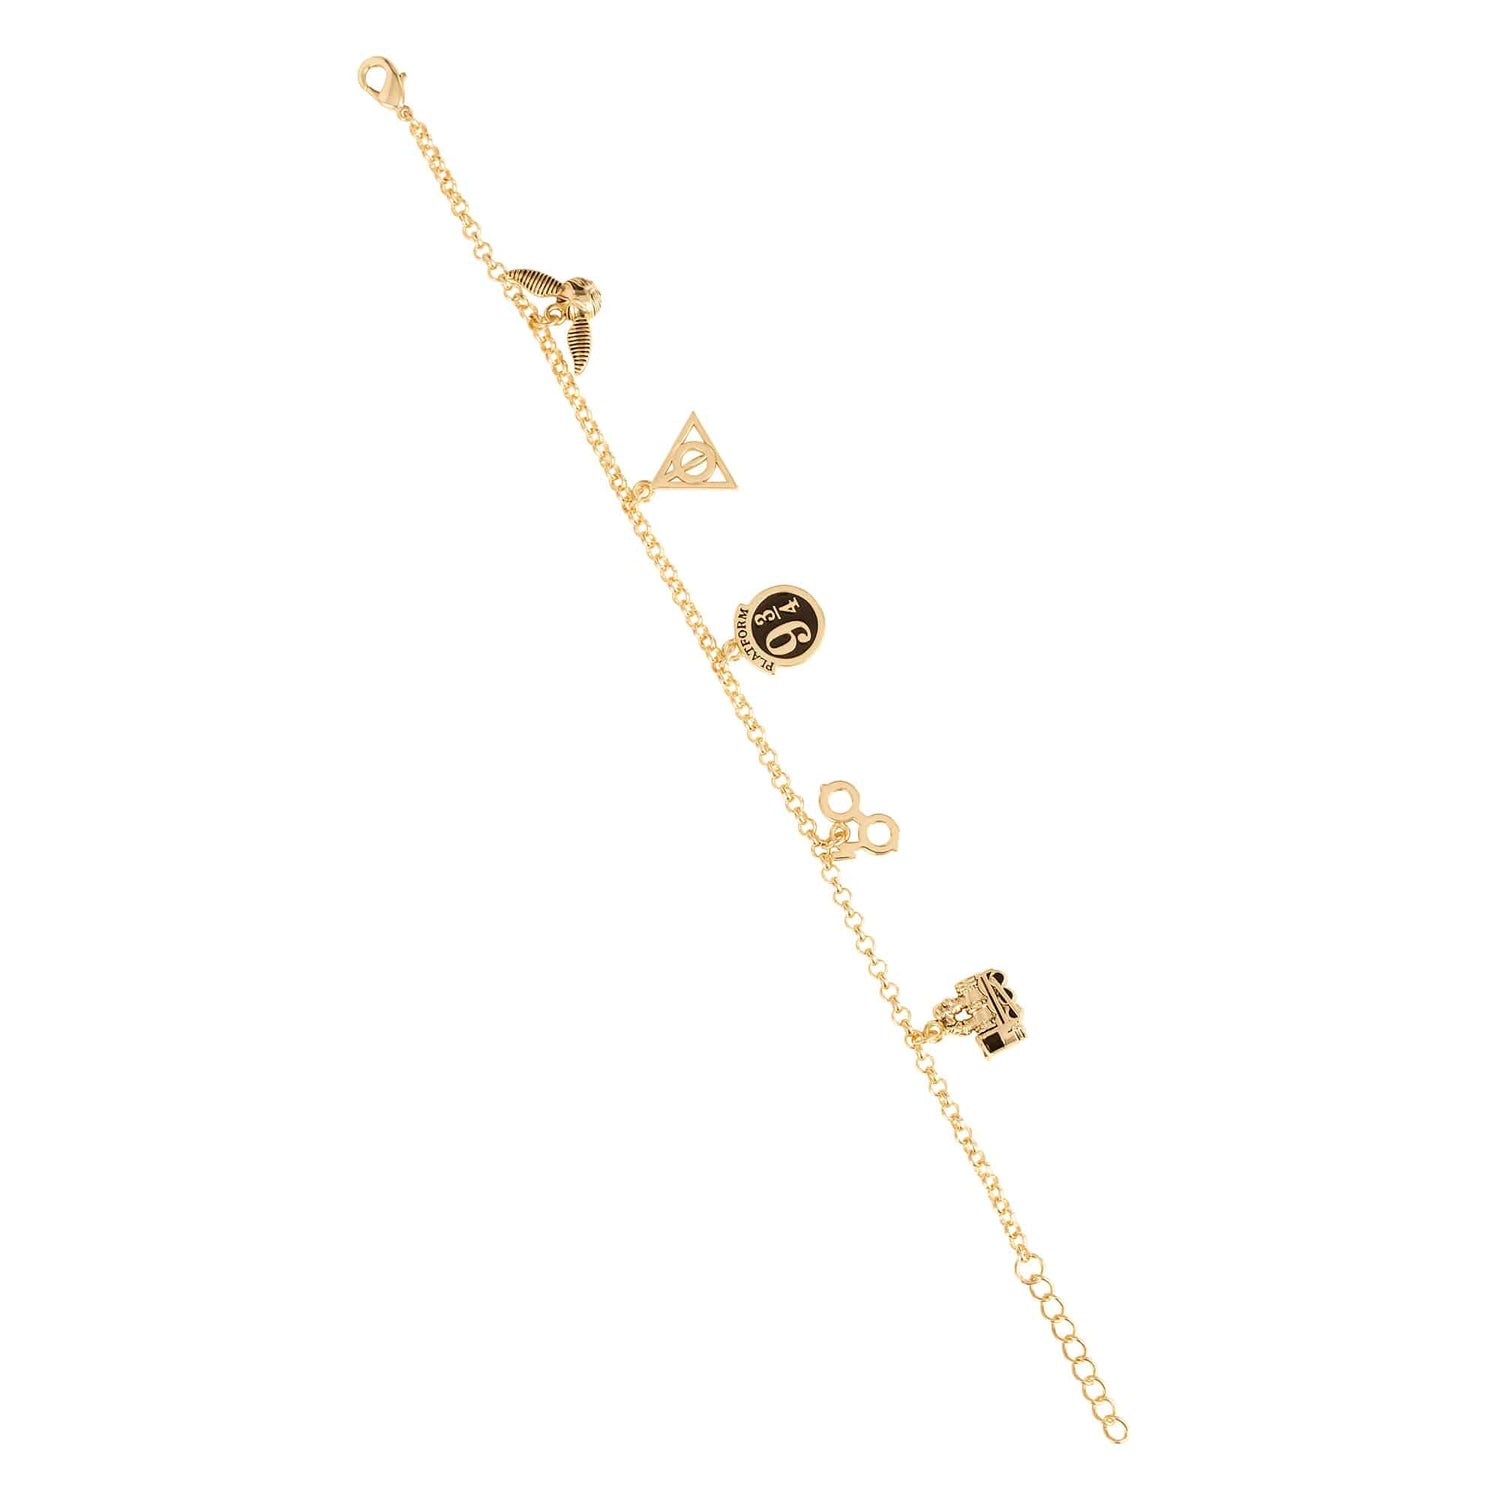 HARRY POTTER - 3 Adjustable Friendship Bracelets + Charms BPG :  : Jewellery Carat Harry Potter